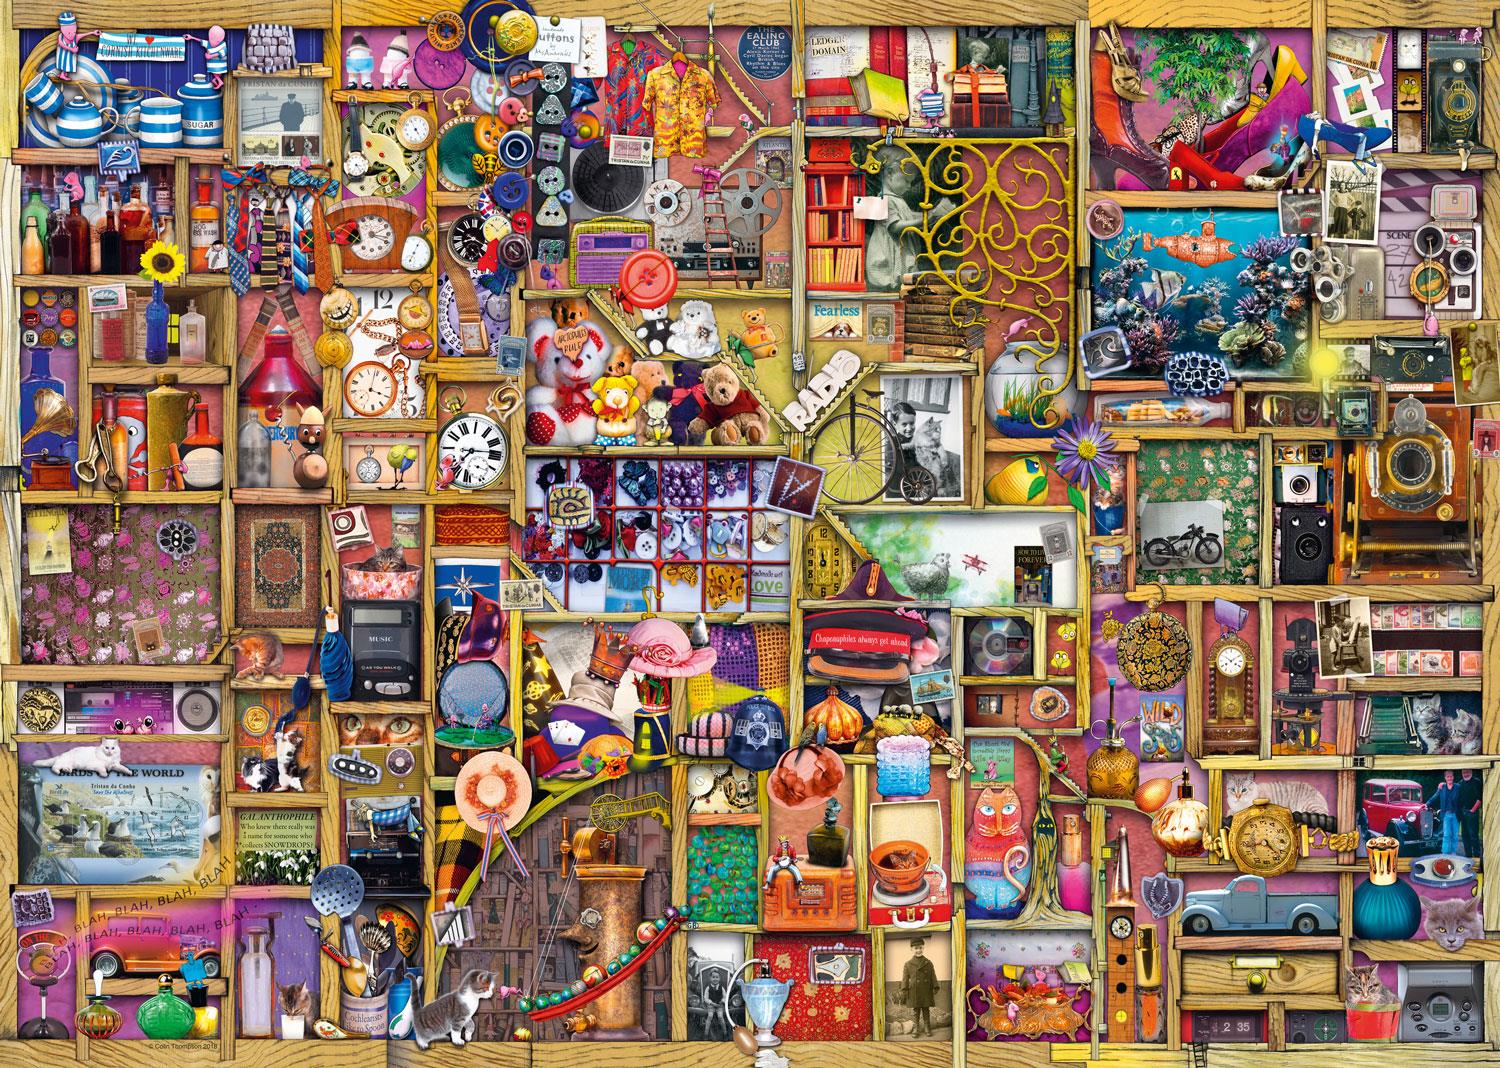 Ravensburger ANTIQUE DOORKNOBS PUZZLE~1000 Piece Jigsaw~Door knobs #198634